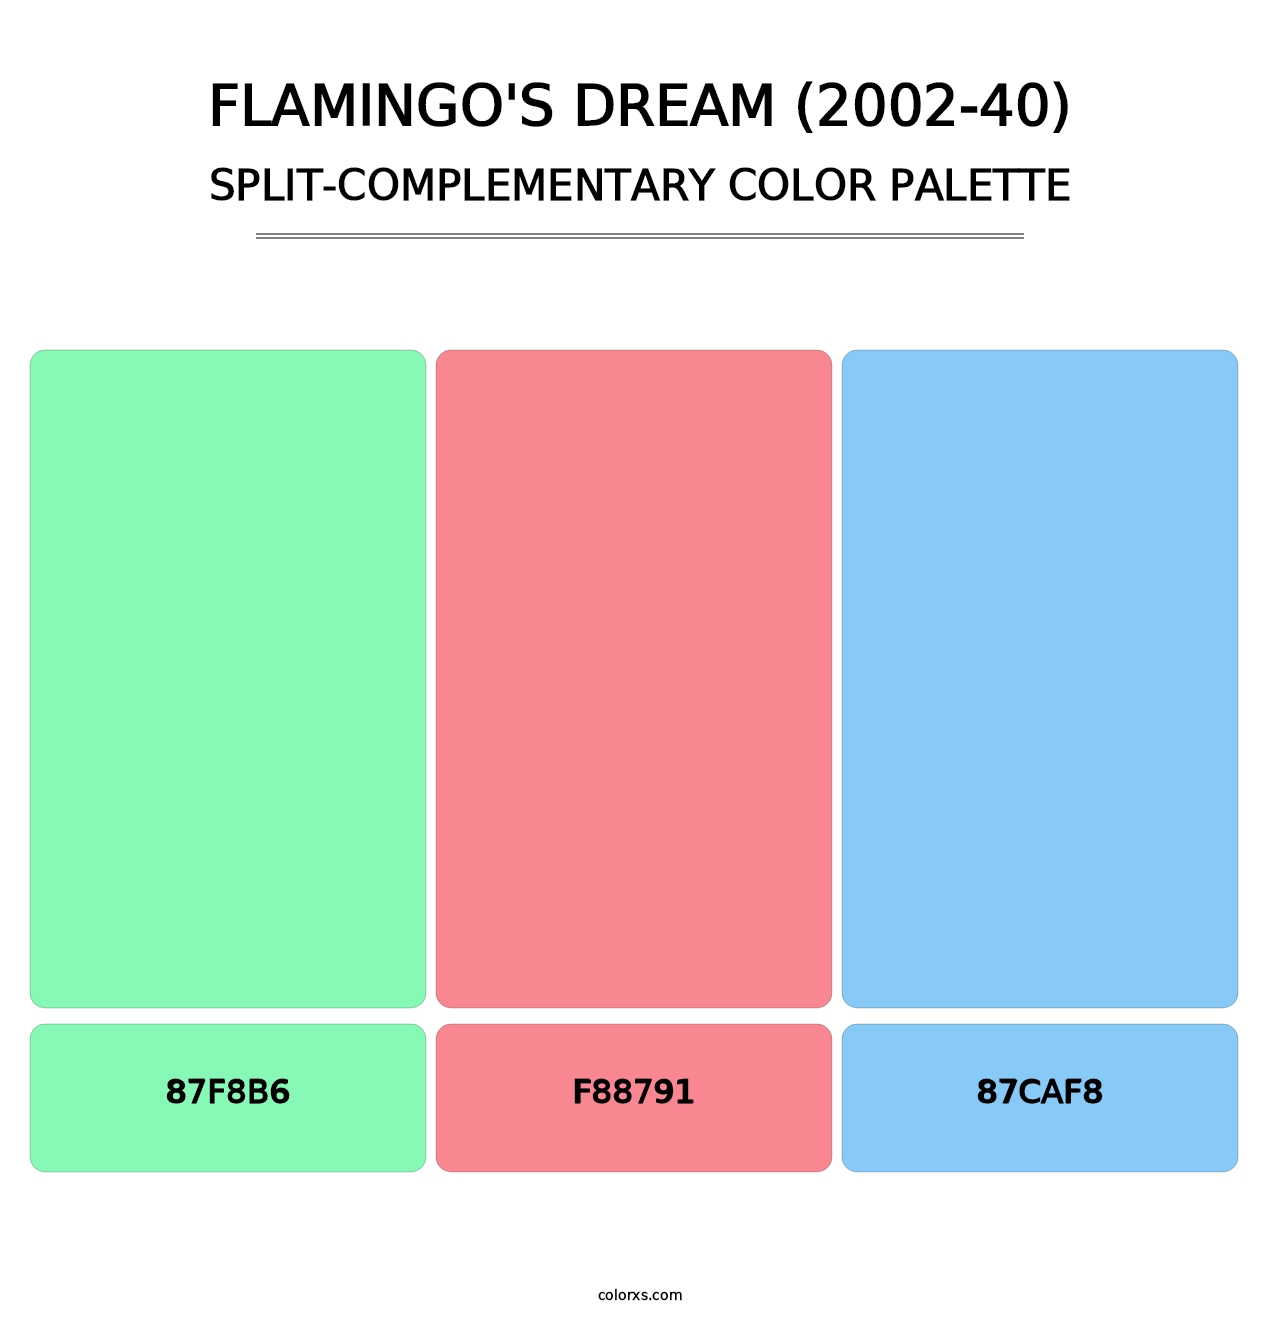 Flamingo's Dream (2002-40) - Split-Complementary Color Palette